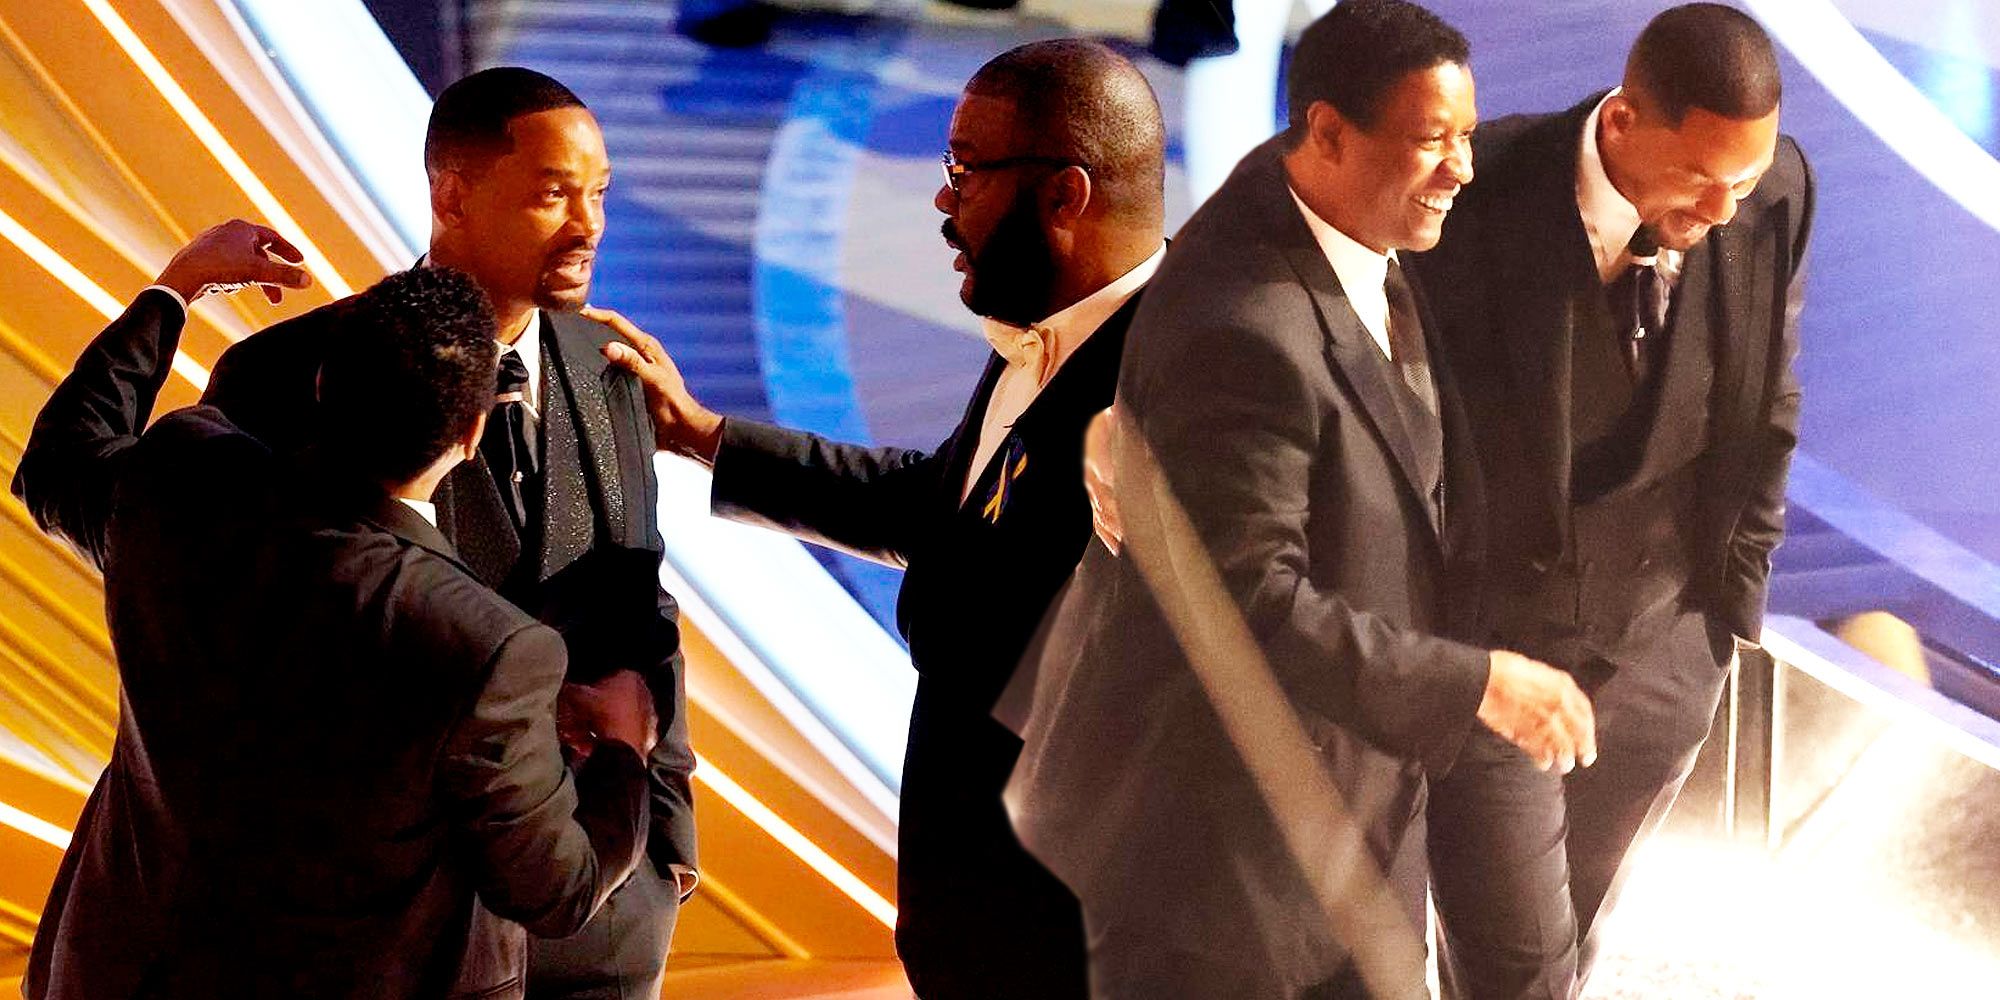 La audiencia en el teatro de los Oscar tuvo una reacción sorprendente a la bofetada de Will Smith